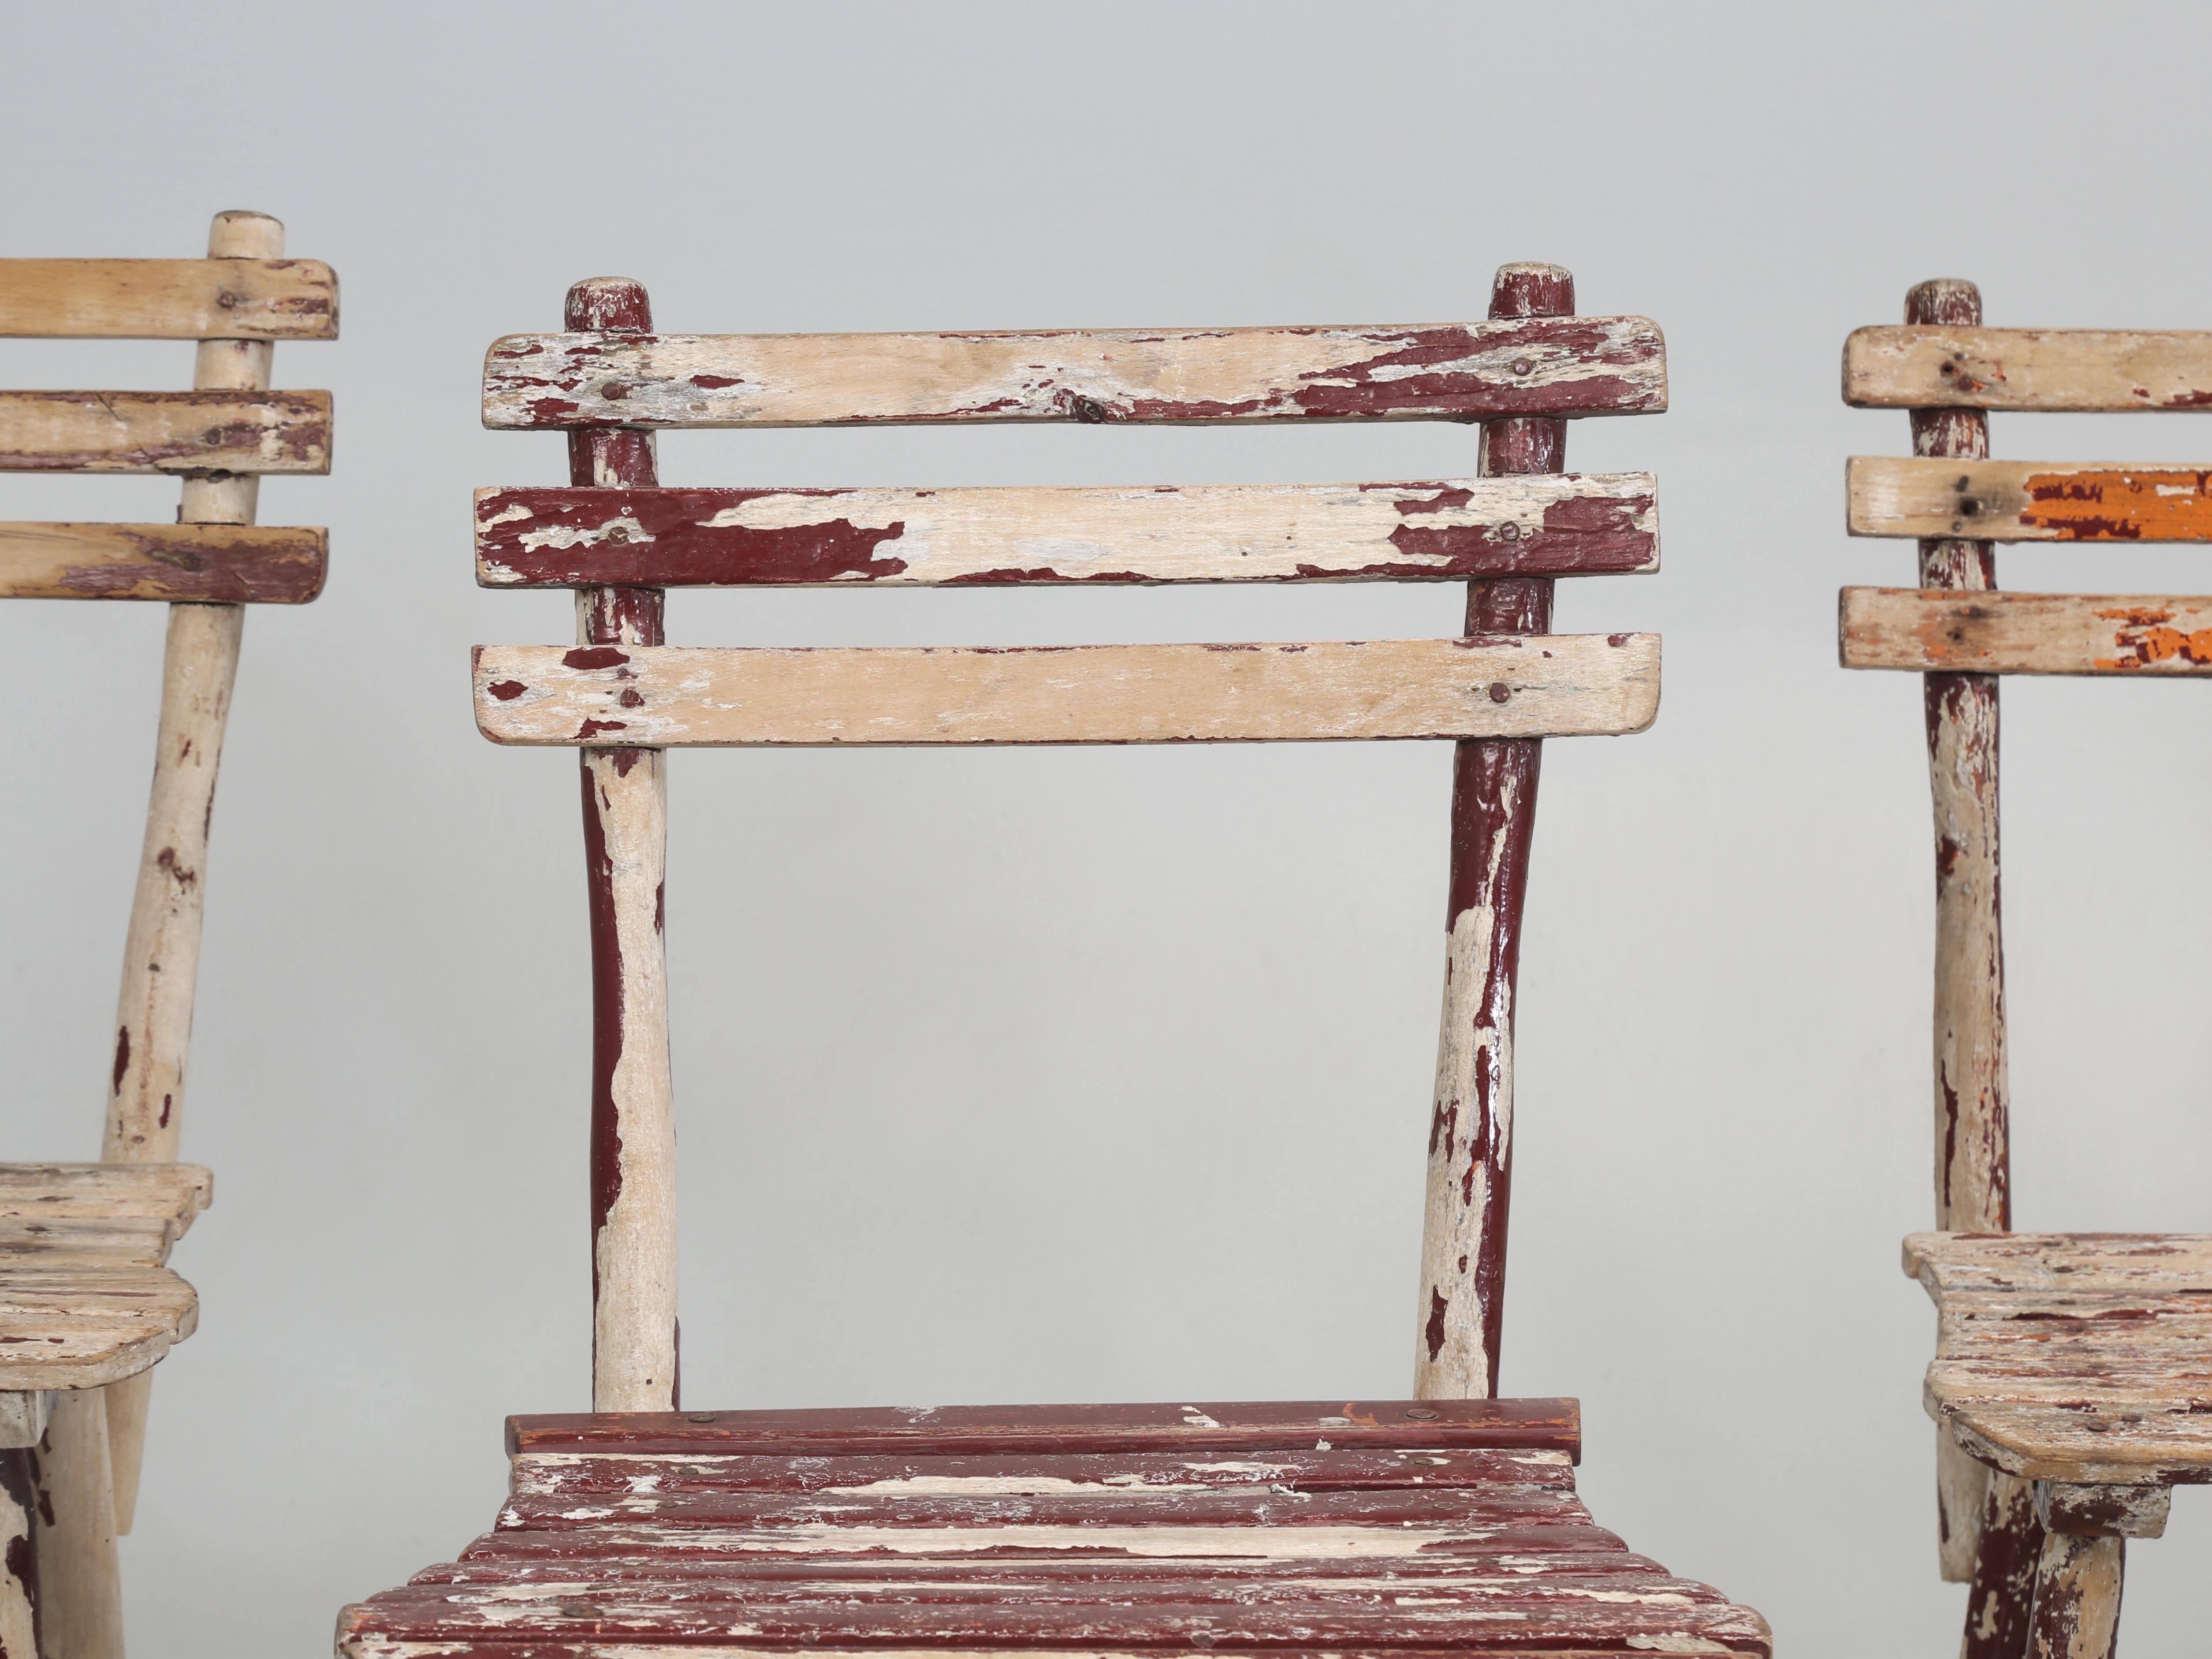 Ensemble de 6 chaises de jardin vintage fabriquées à Aix-la-Chapelle, Allemagne, probablement dans les années 1950. À en juger par les nombreuses couches de peinture, ils doivent avoir un certain âge. Les 6 chaises de jardin ne sont certainement pas